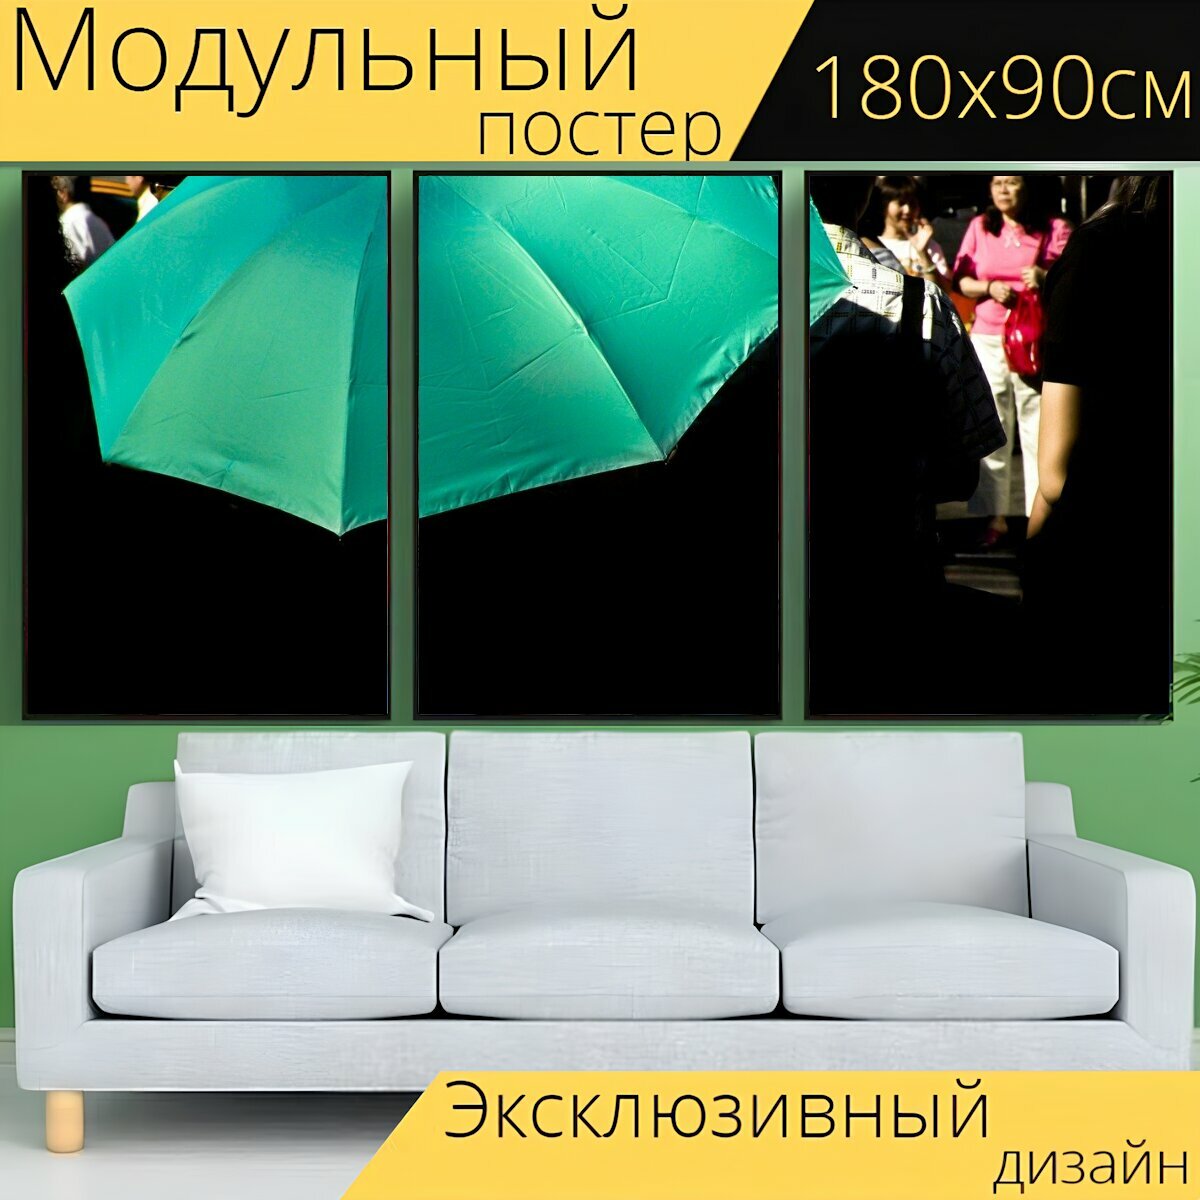 Модульный постер "Зонтик, чехол от дождя, зонт" 180 x 90 см. для интерьера